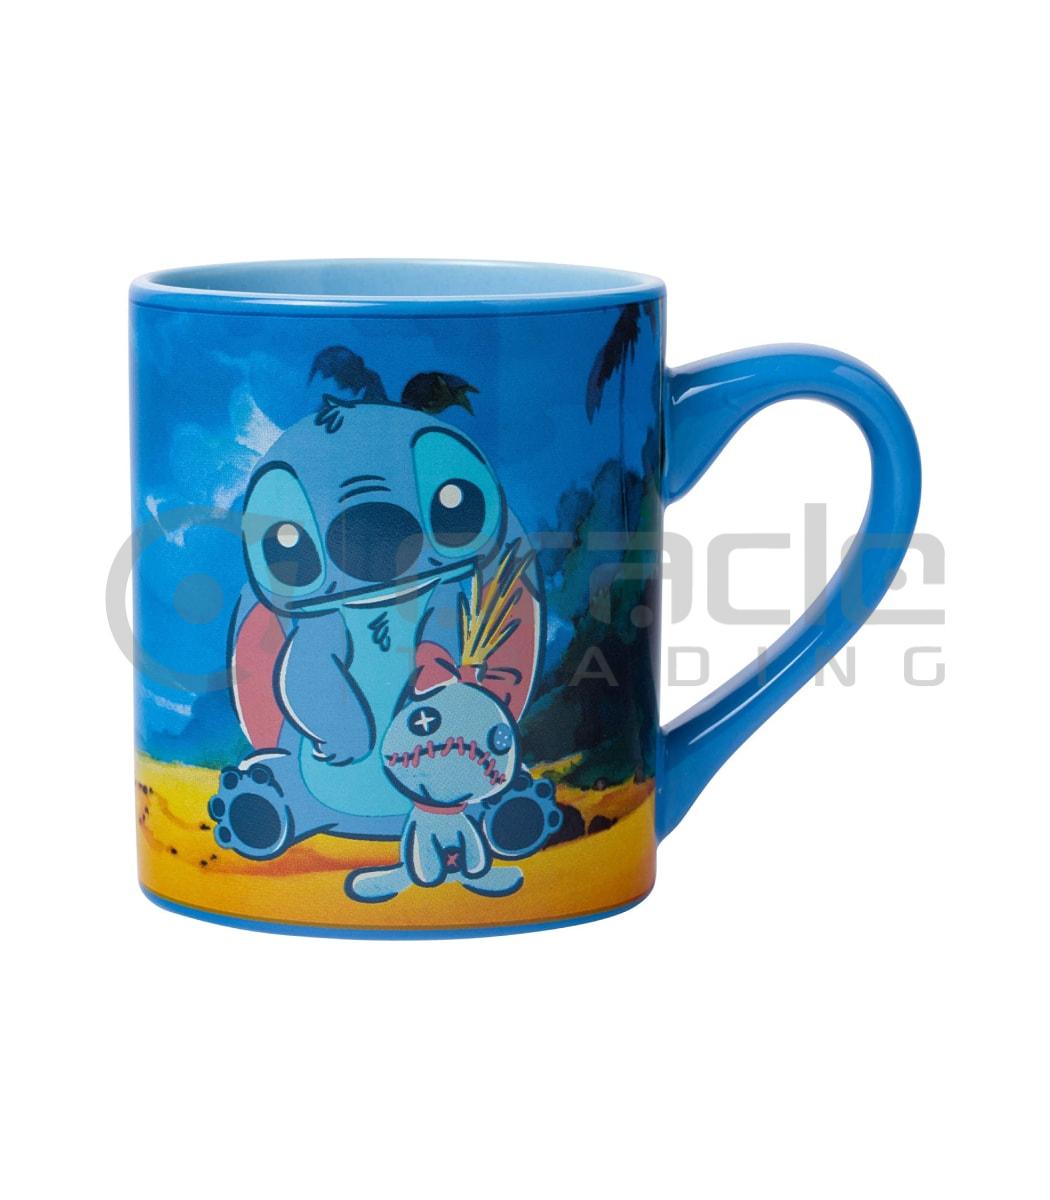 Lilo & Stitch Mug - Ohana